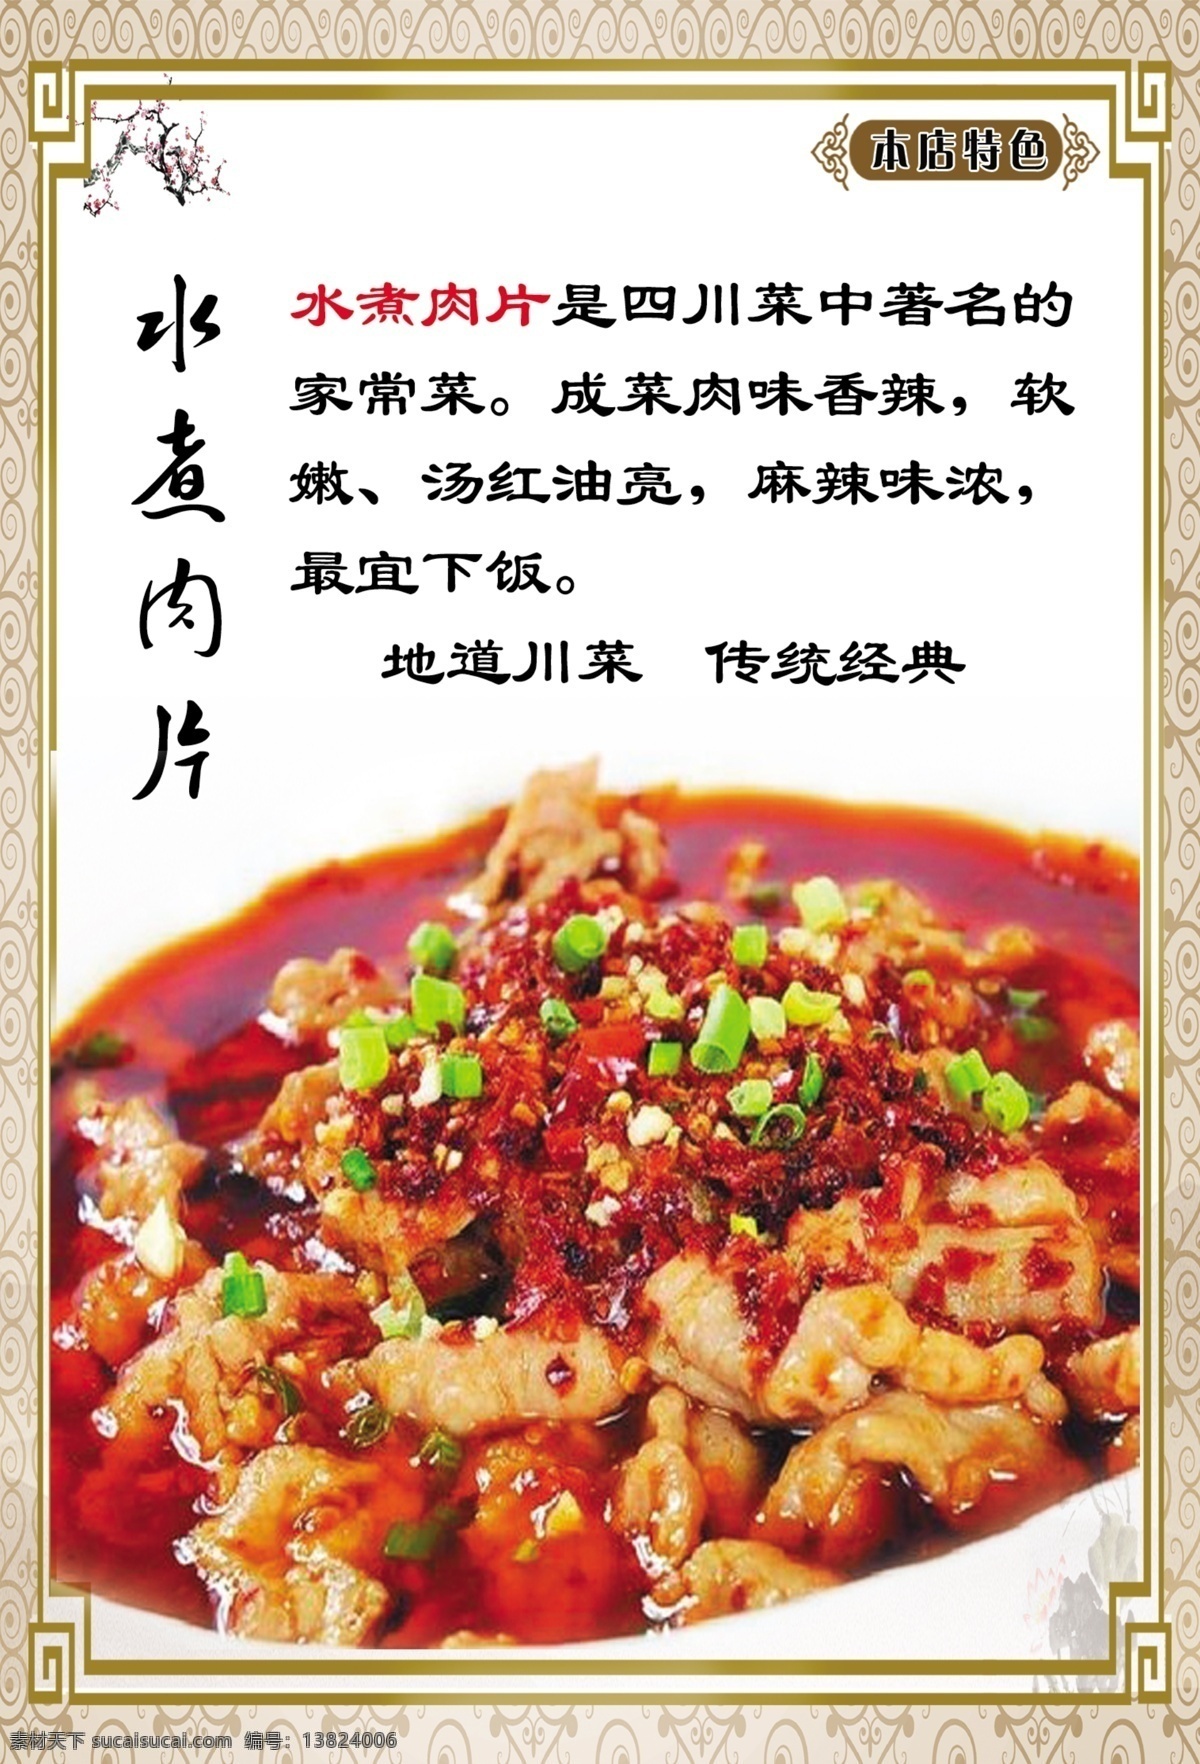 重庆特色 菜谱 海报 特色水煮肉片